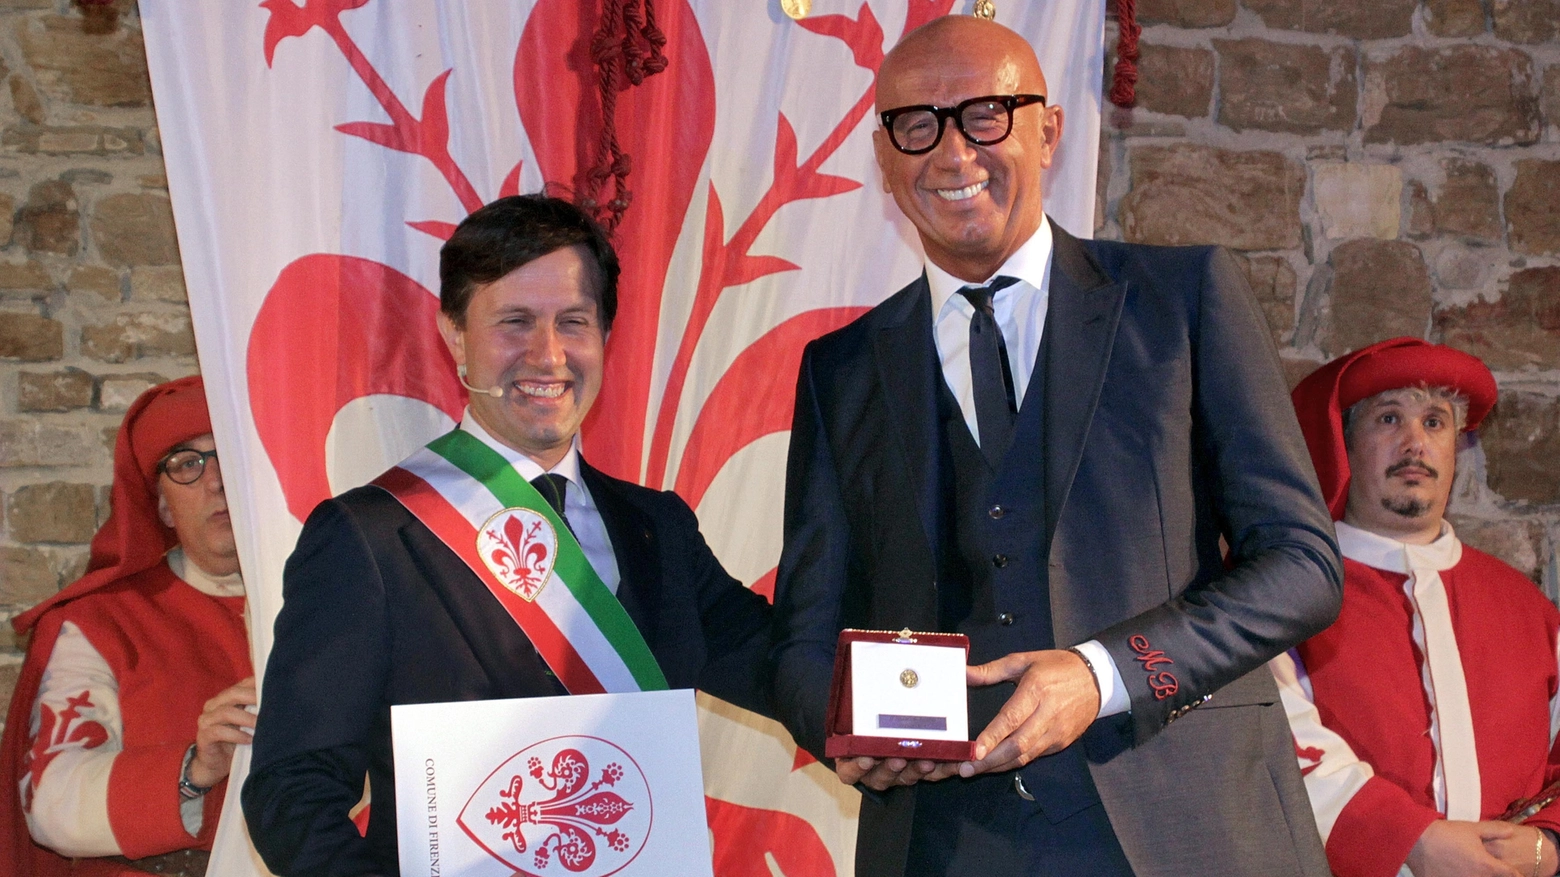 Marco Bizzarri riceve il Fiorino d'oro (Pressphoto)